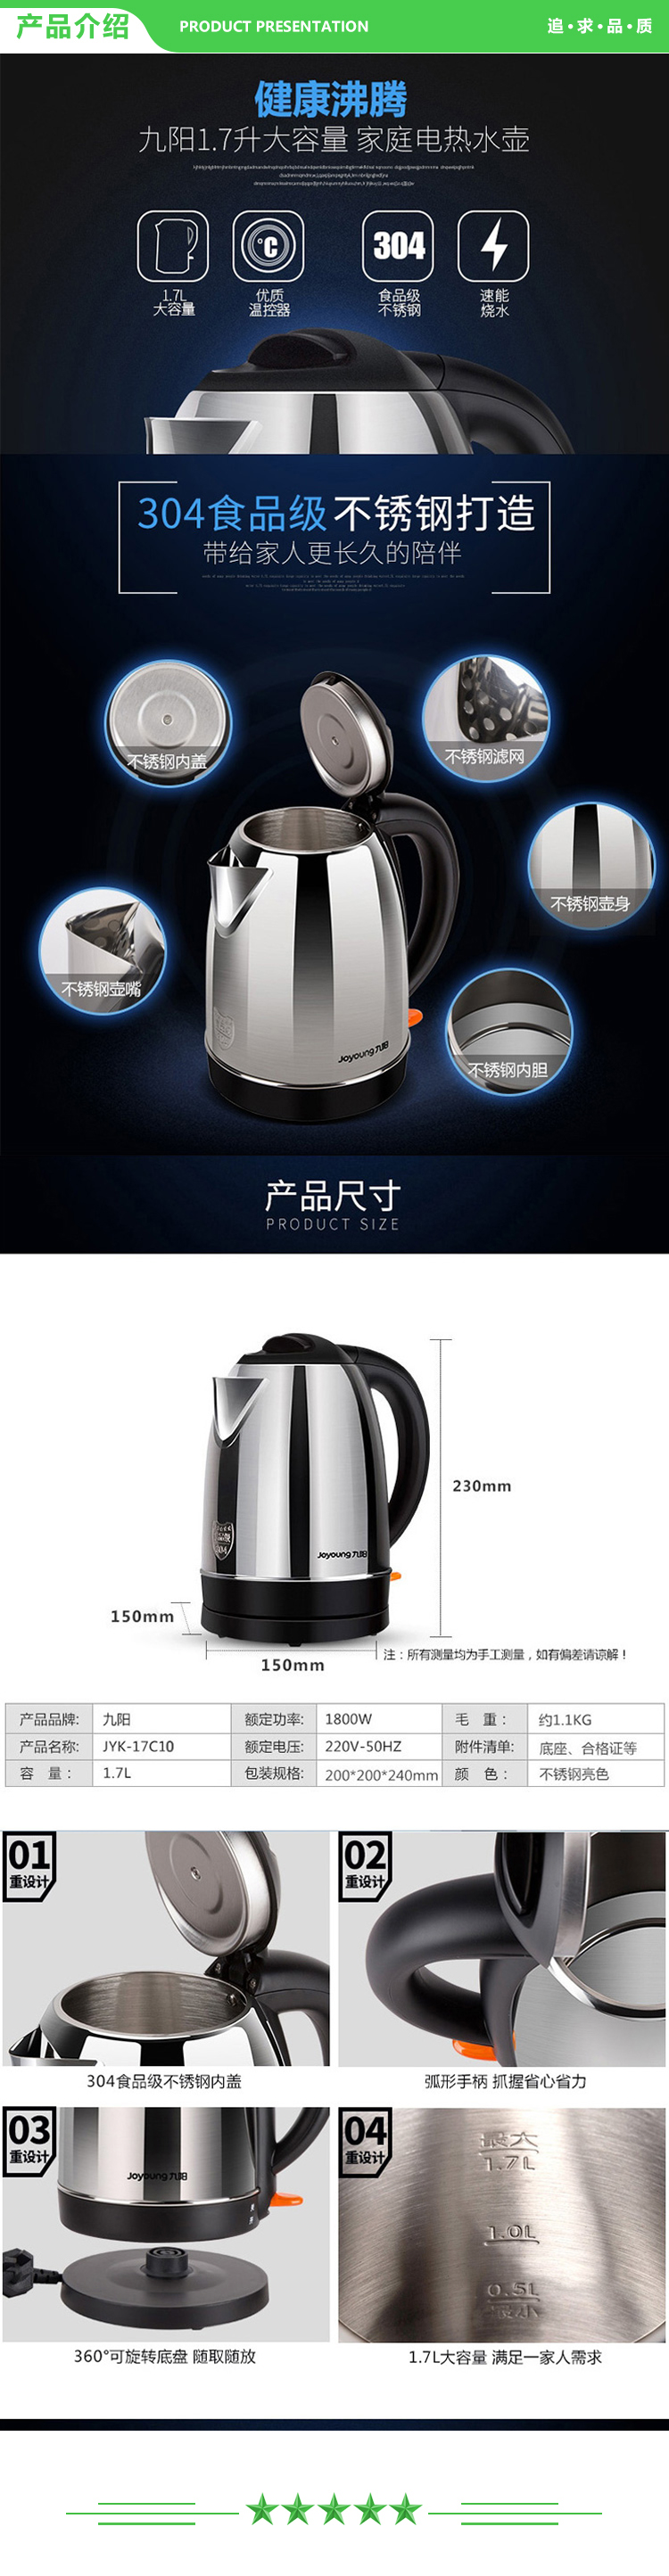 九阳 Joyoung JYK-17C10 电水壶家用1.7L不锈钢开水煲.jpg